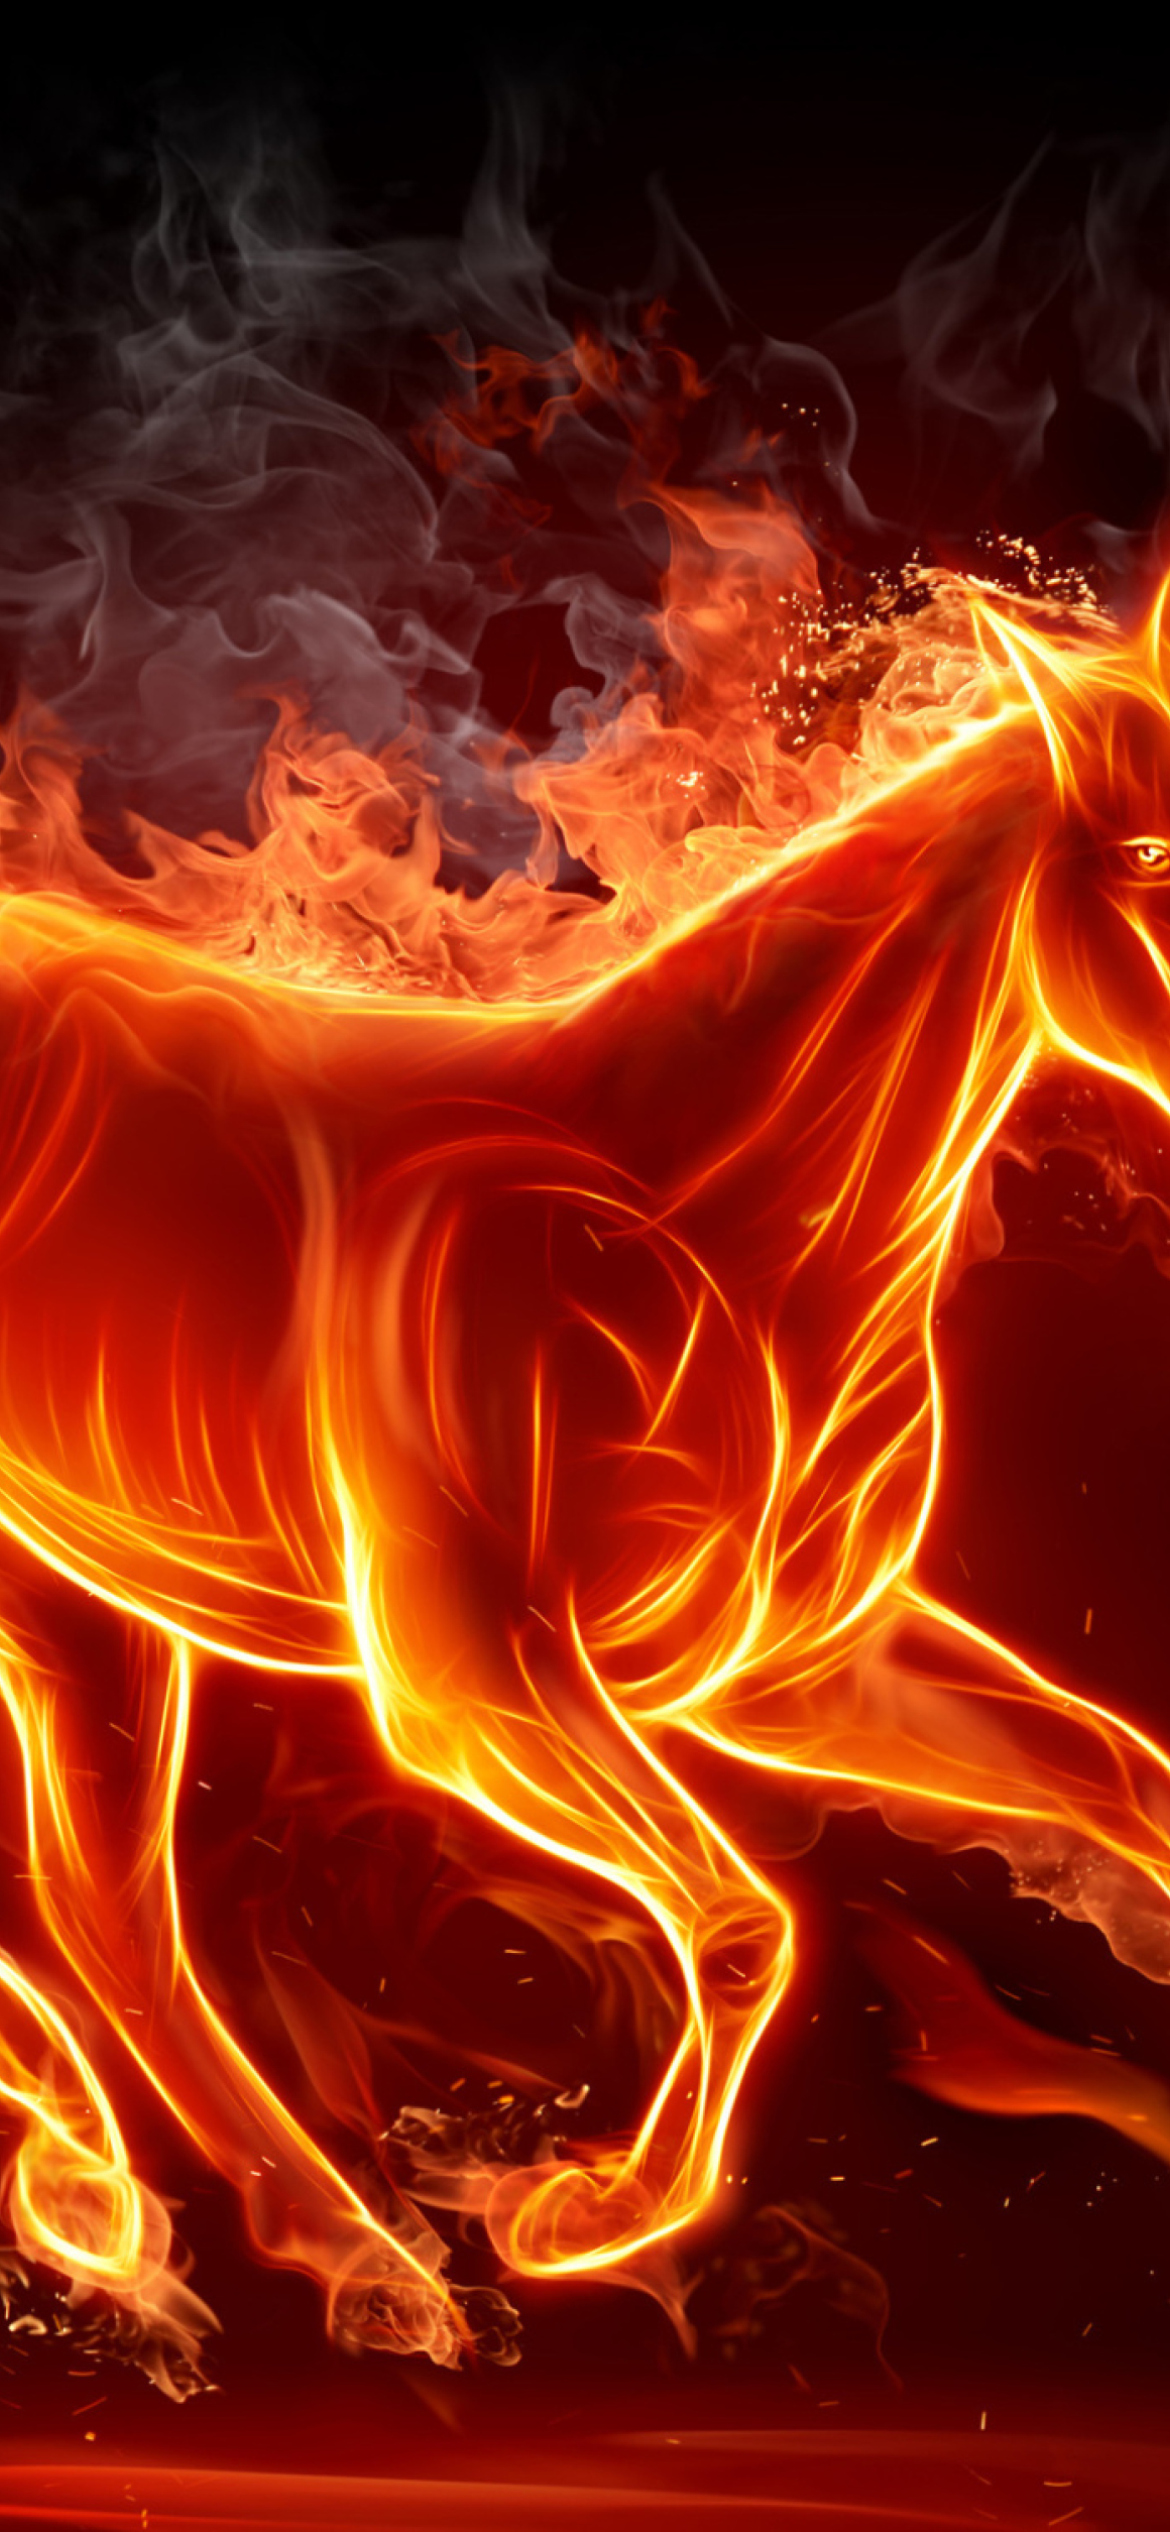 Fire Horse wallpaper 1170x2532